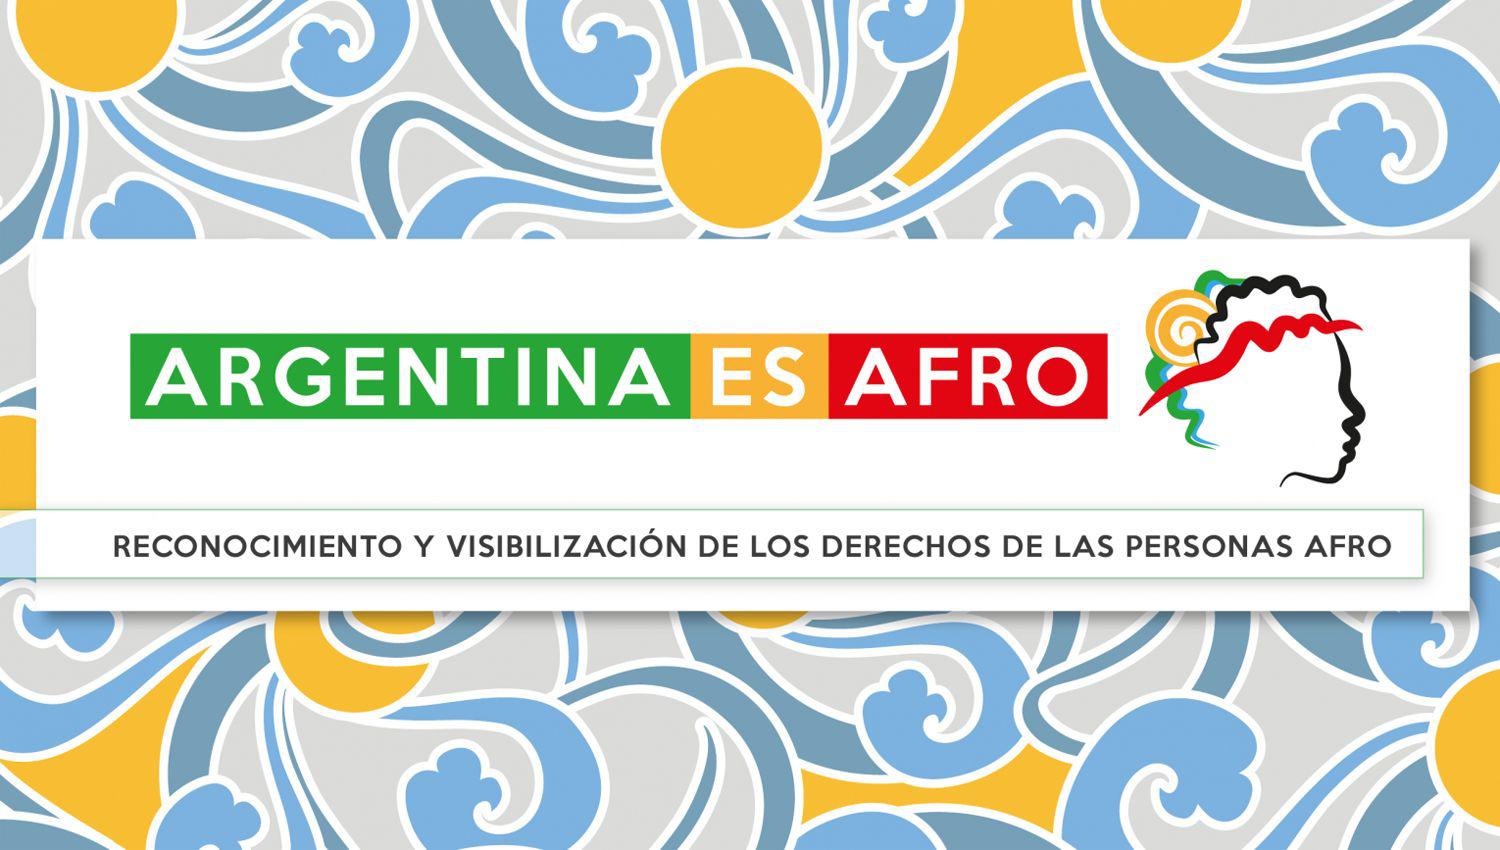 En noviembre del 2020 la Defensoría del P�blico lanzaba la campaña Argentina es afro con el fin de visibilizar y reconocer los derechos de las personas afrodescendientes